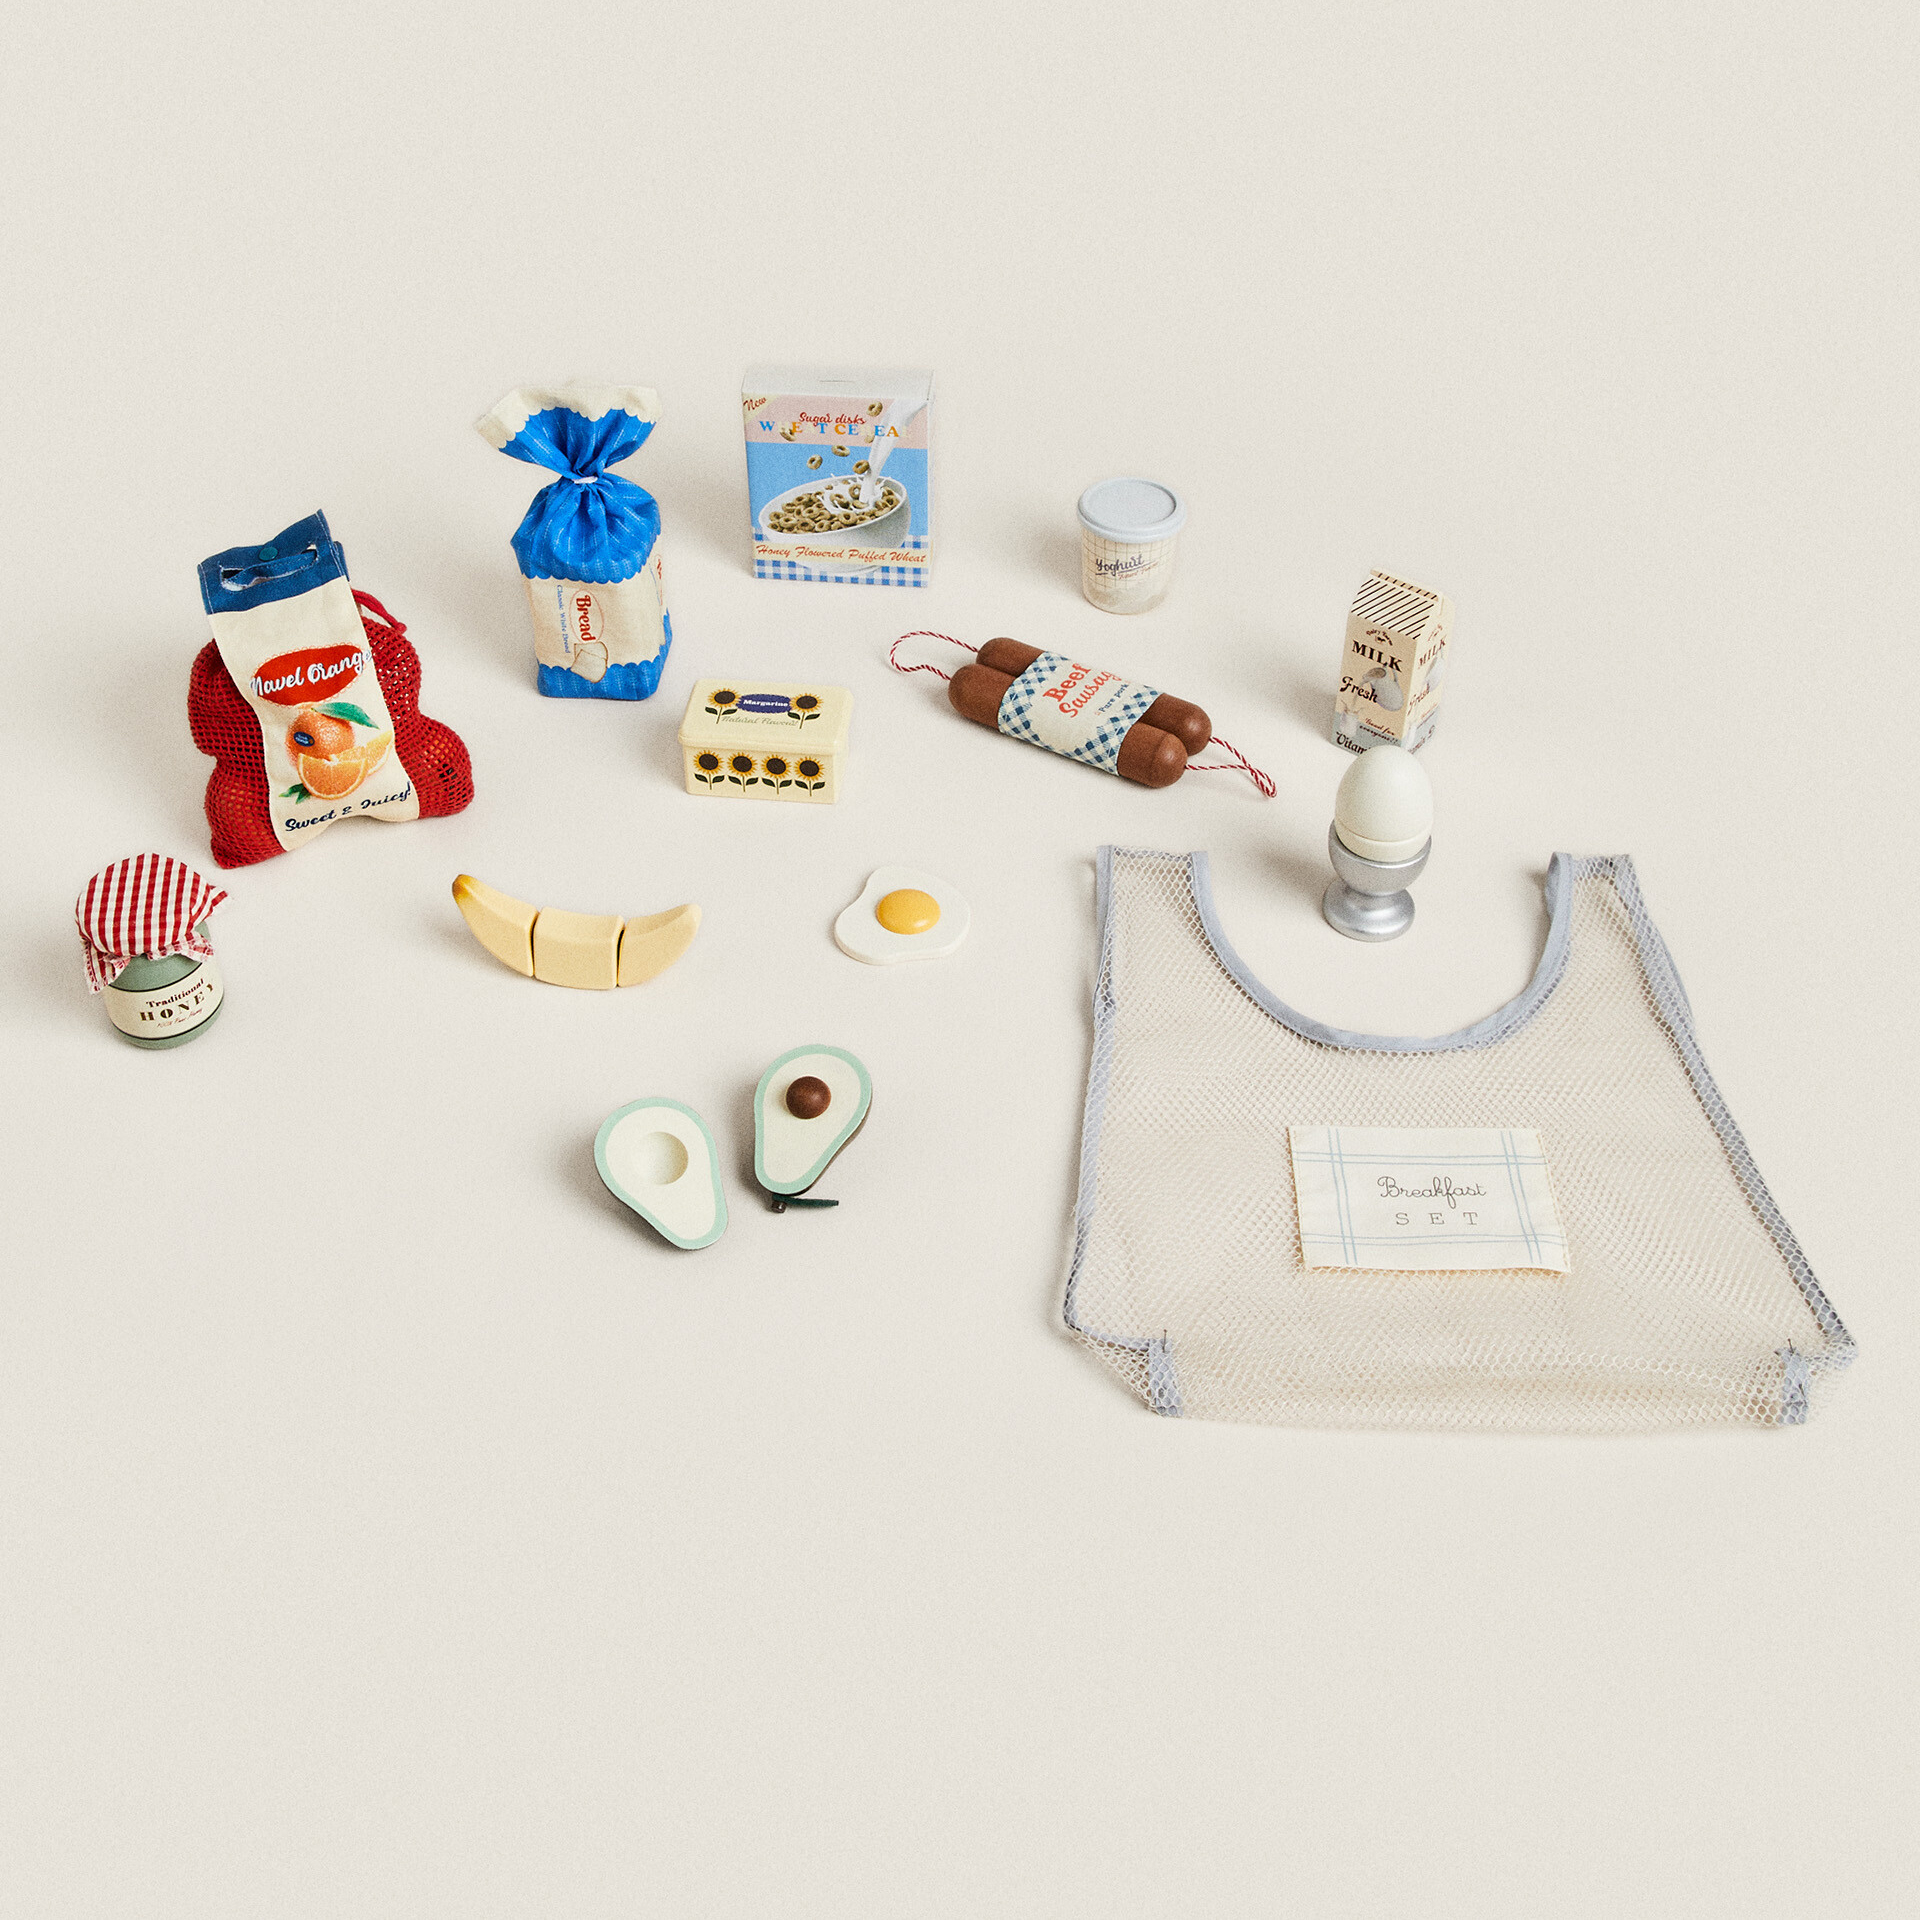 Набор игрушечных продуктов Zara Home, 13 предметов набор игрушечных продуктов наша игрушка 7 предметов в комплекте блистер 58902